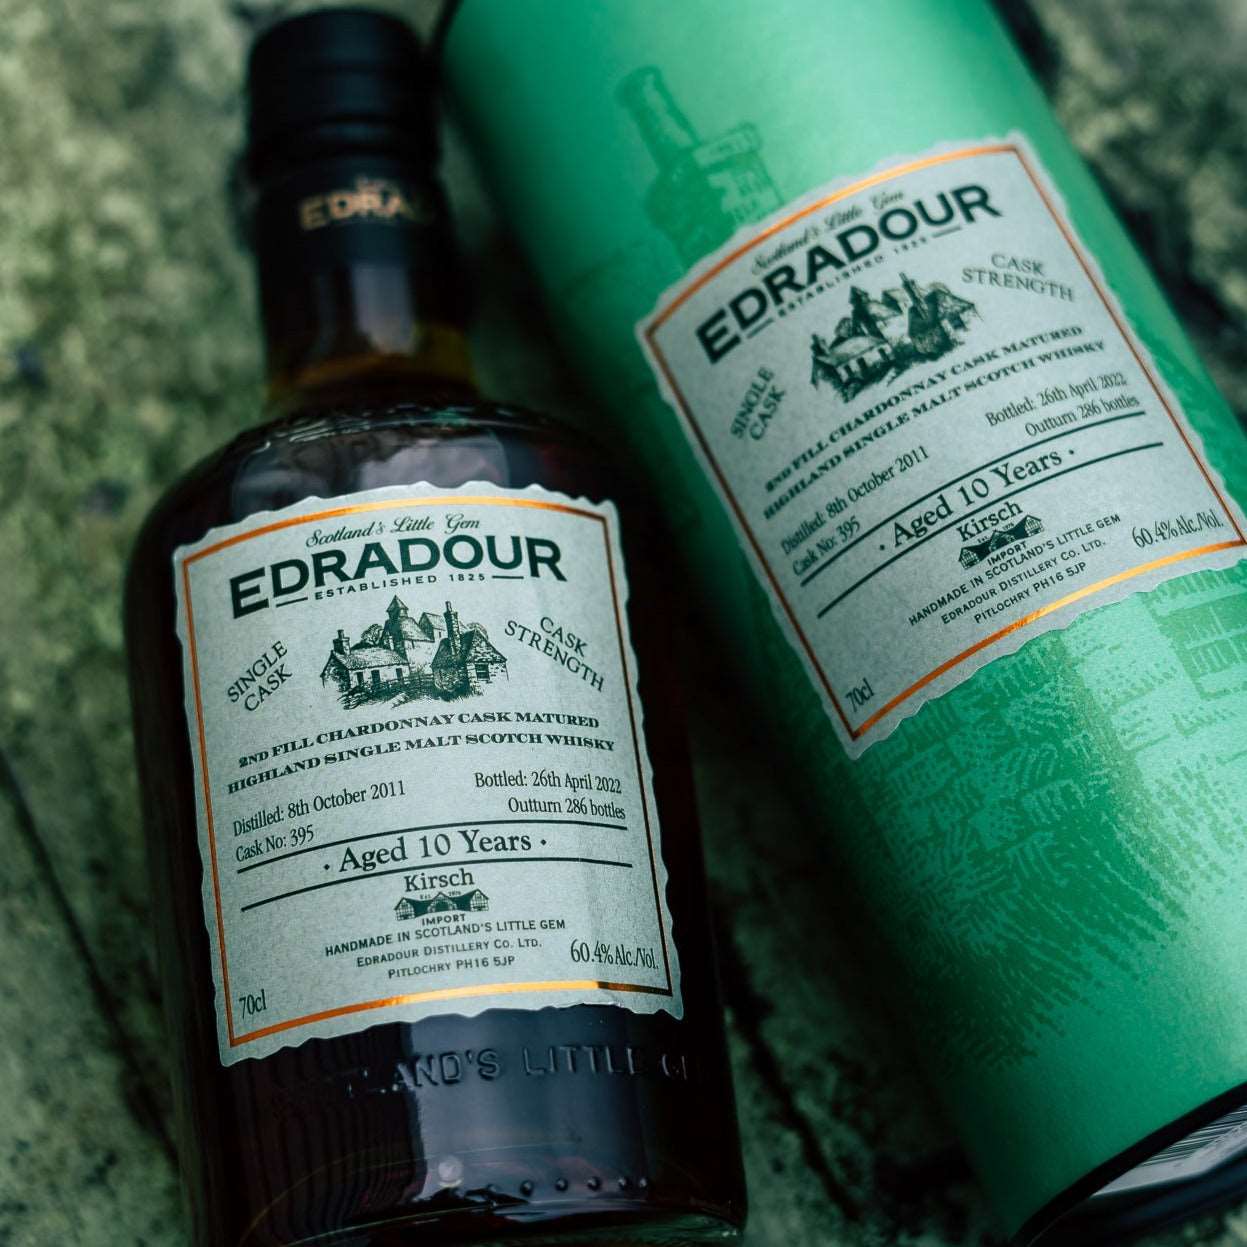 Edradour | 10 Jahre | 2011/2022 | Chardonnay Cask #395 | 0,7l | 60,4%GET A BOTTLE